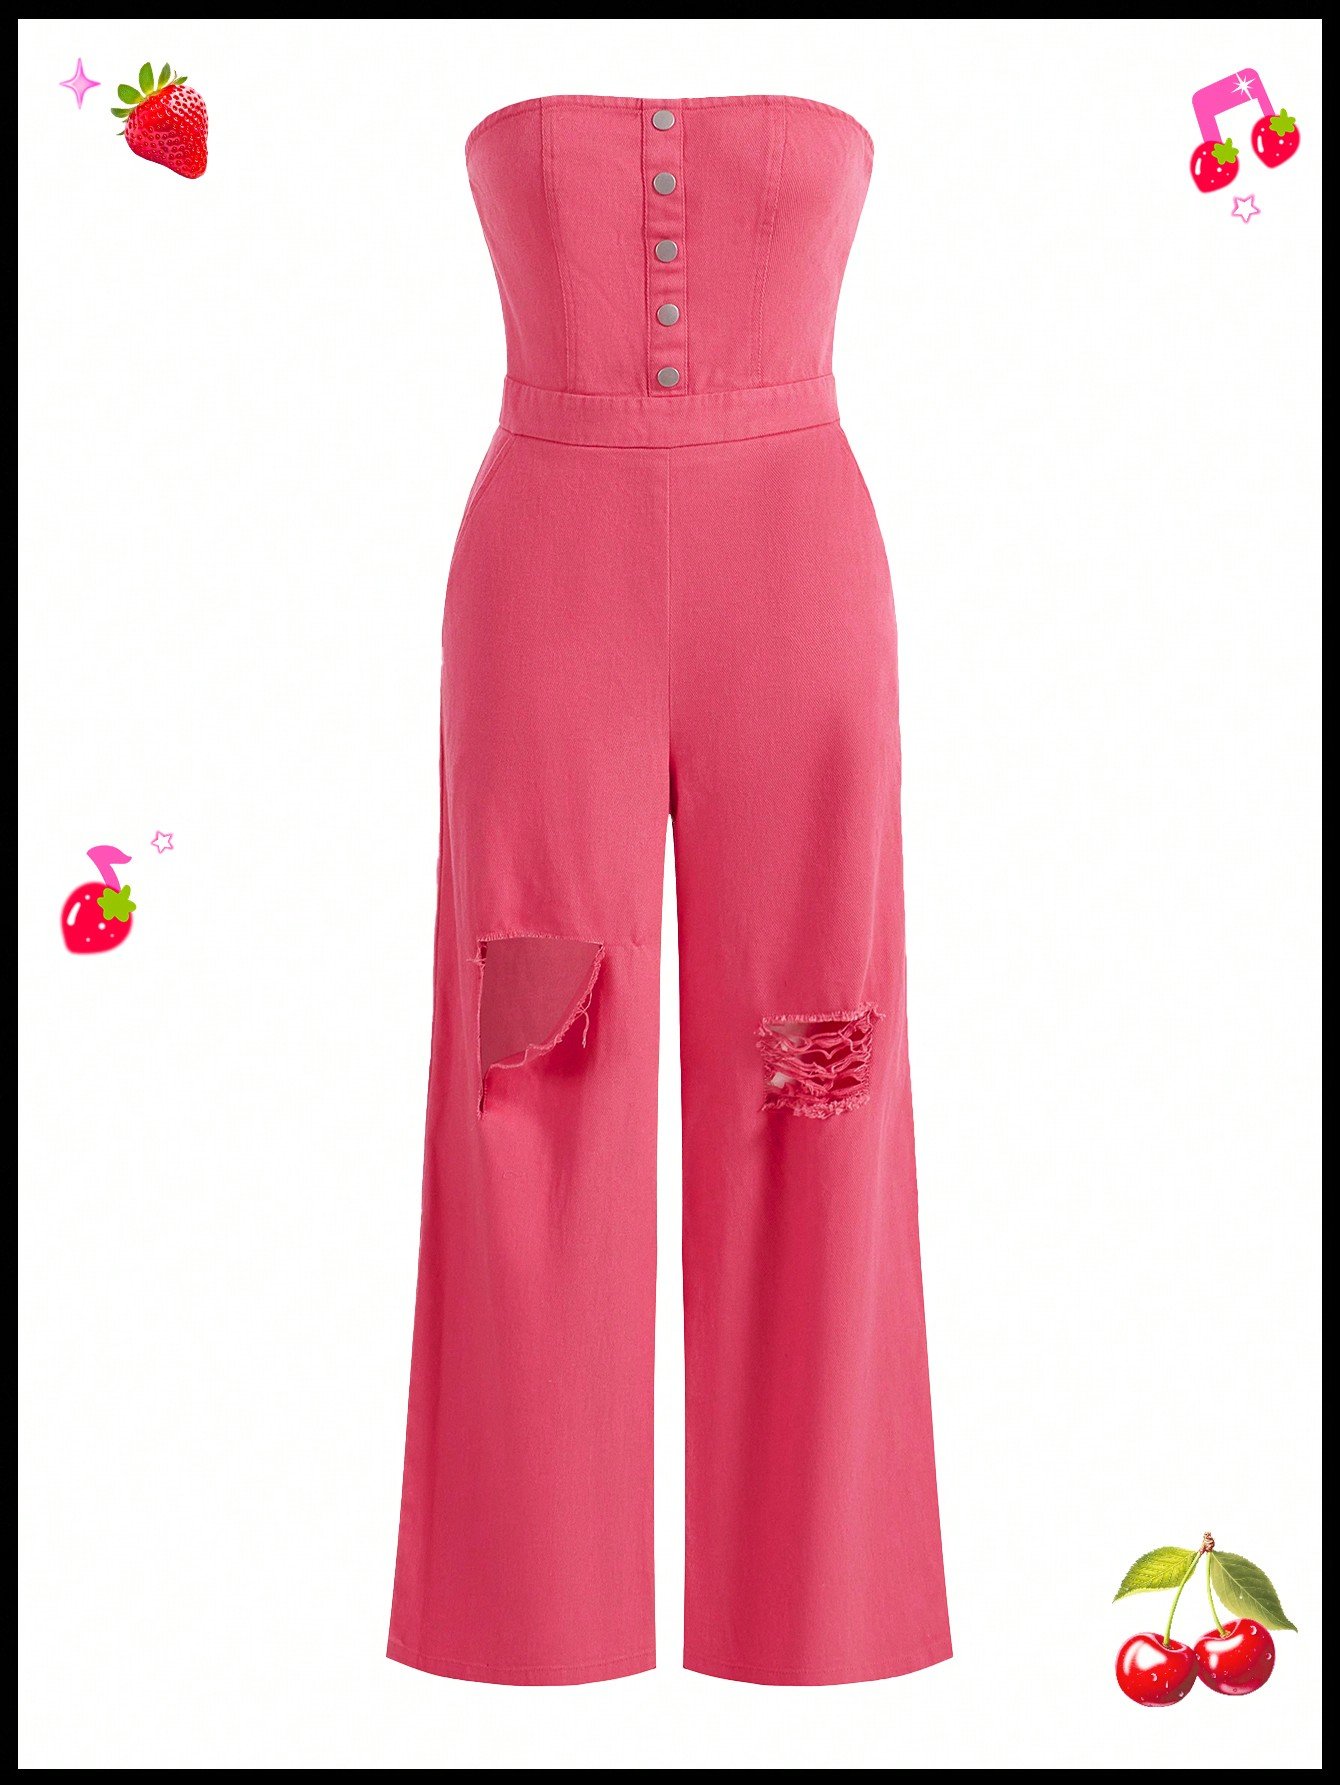 ダイバーシティ 冒険的 ジャンプスーツ サマーウェア ストラップレス ピンク色 カーゴパンツ